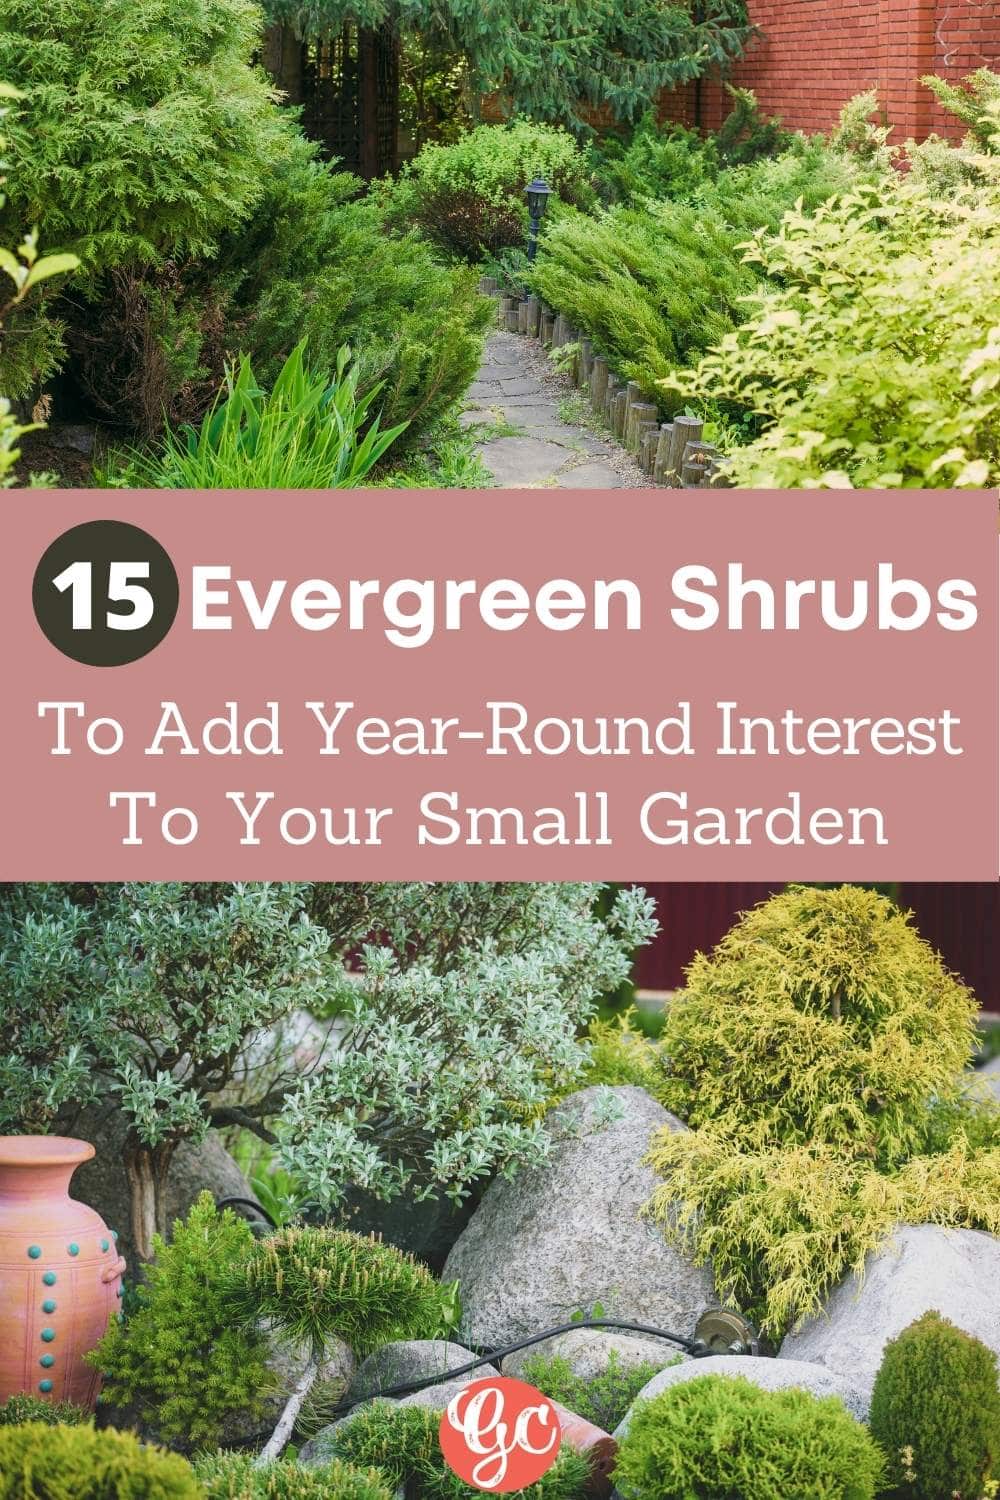  适合小型花园和景观的15种矮小常绿灌木